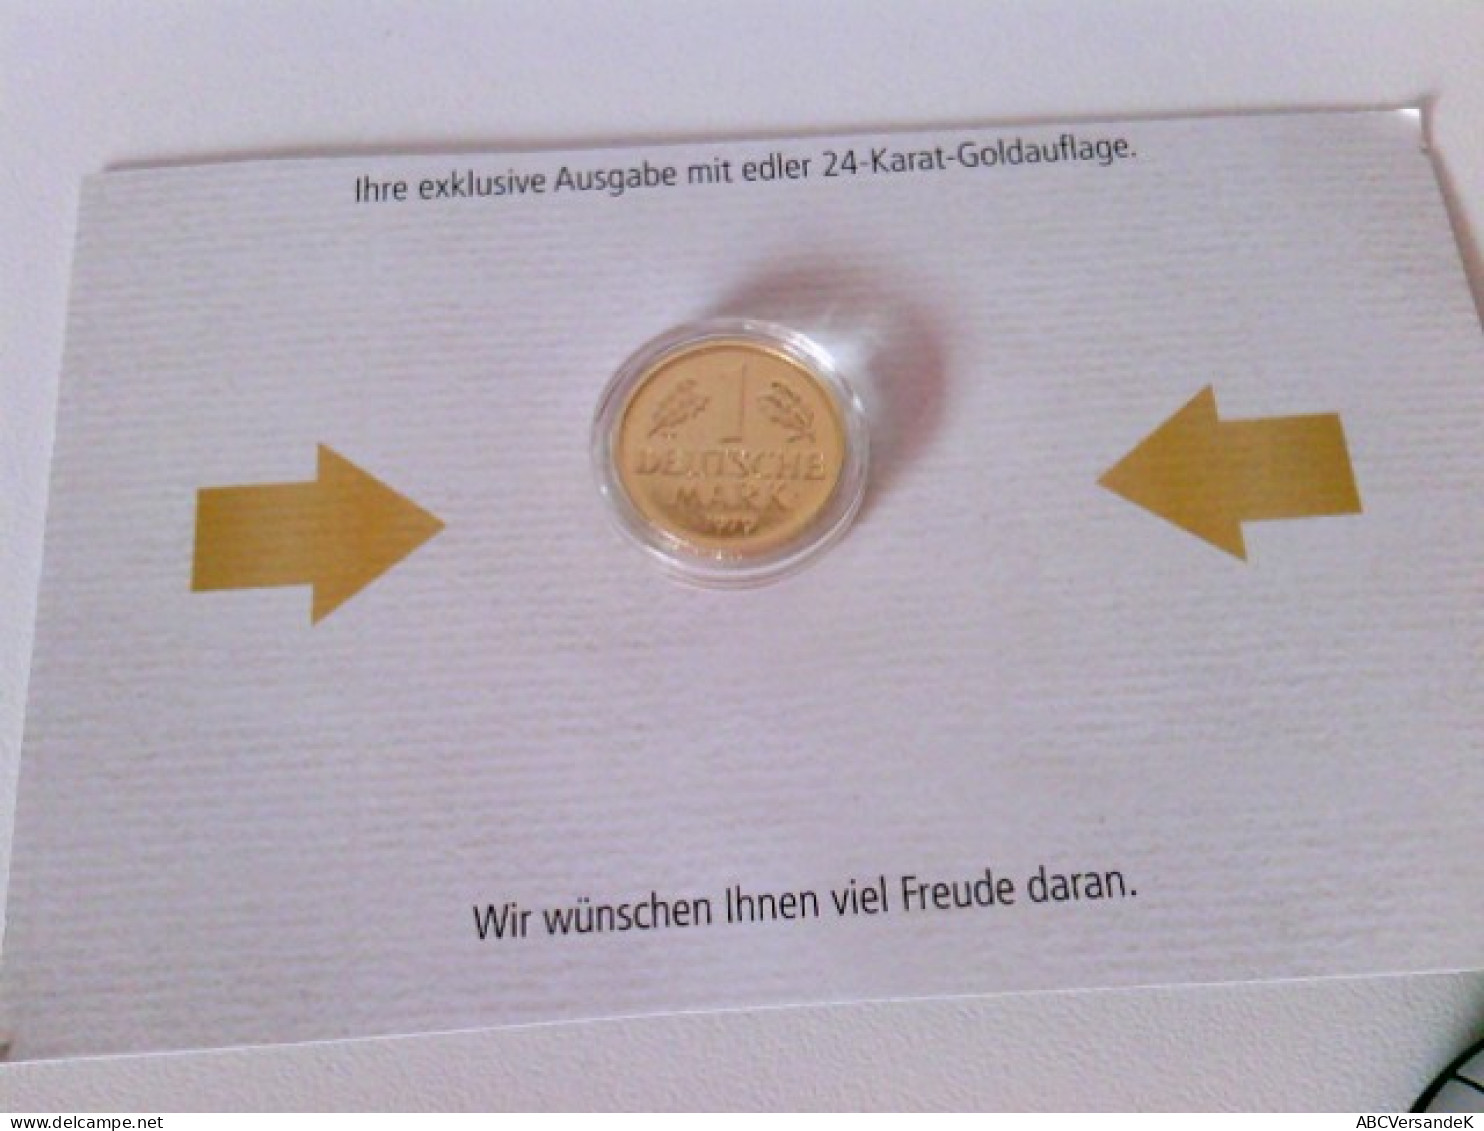 Münzen/ Medaillen: Hier 5 X 1 DM 1971, 1979, 1980, 1990, 1991 Vergoldet, Deutsche Mark Mit 24 Karat Goldauflag - Numismatics